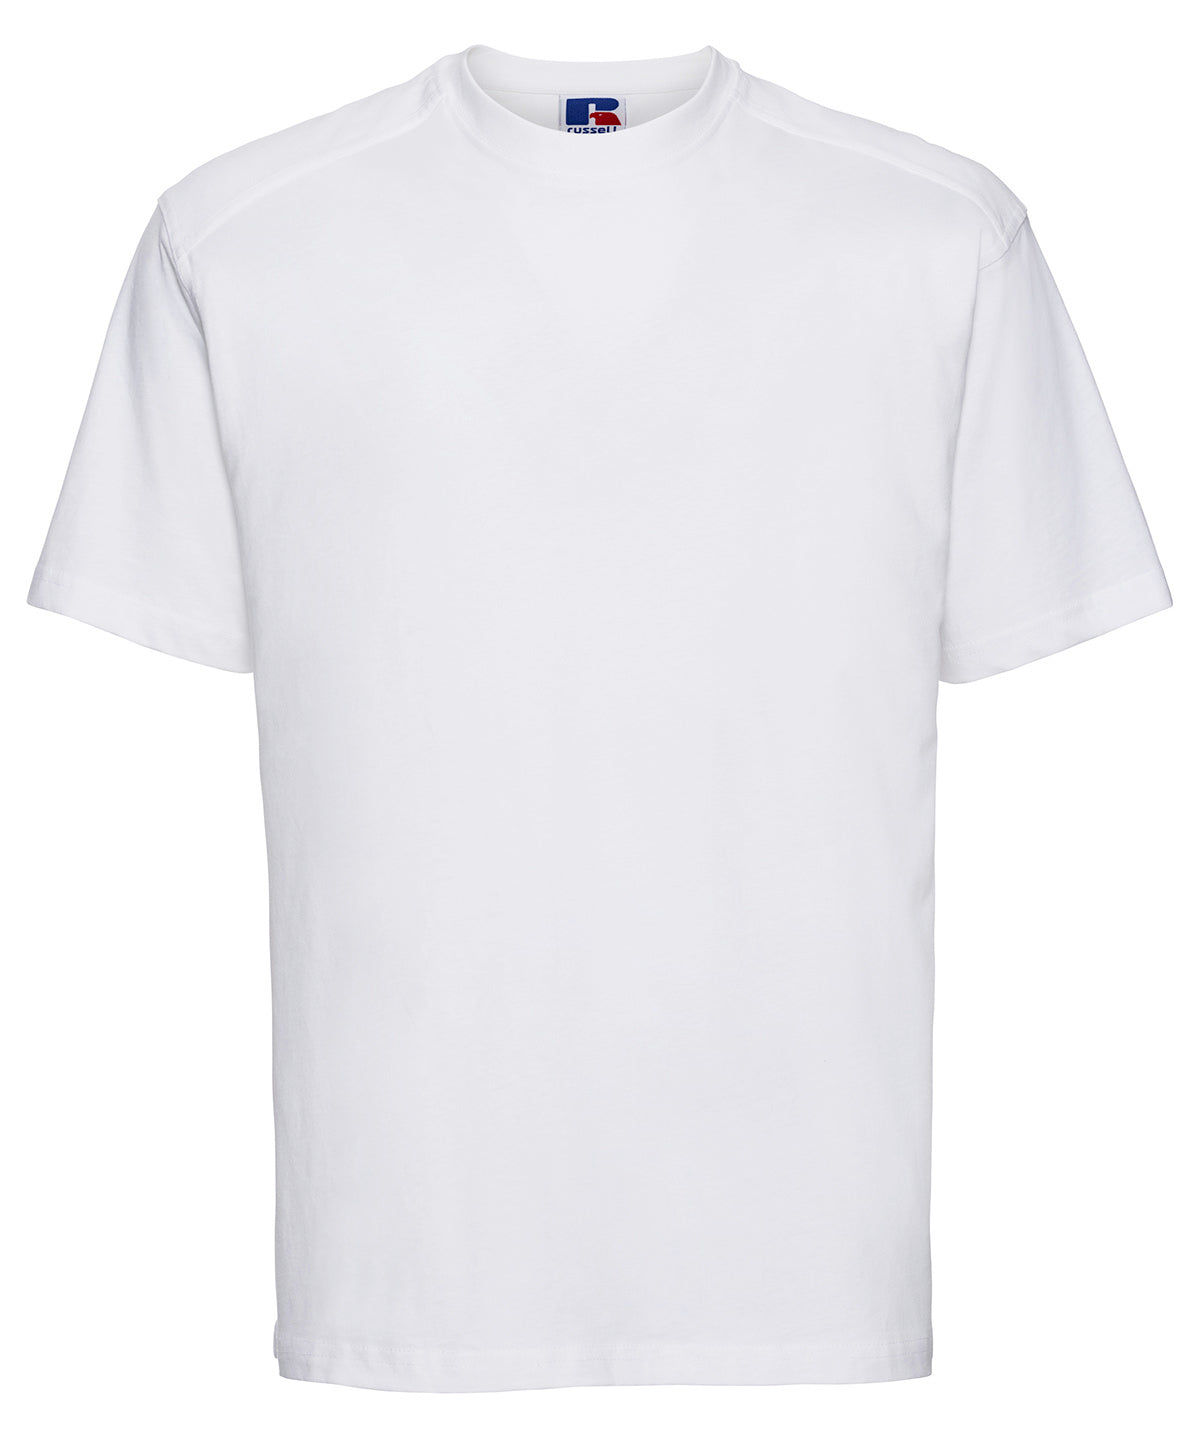 Stuttermabolir - Workwear T-shirt